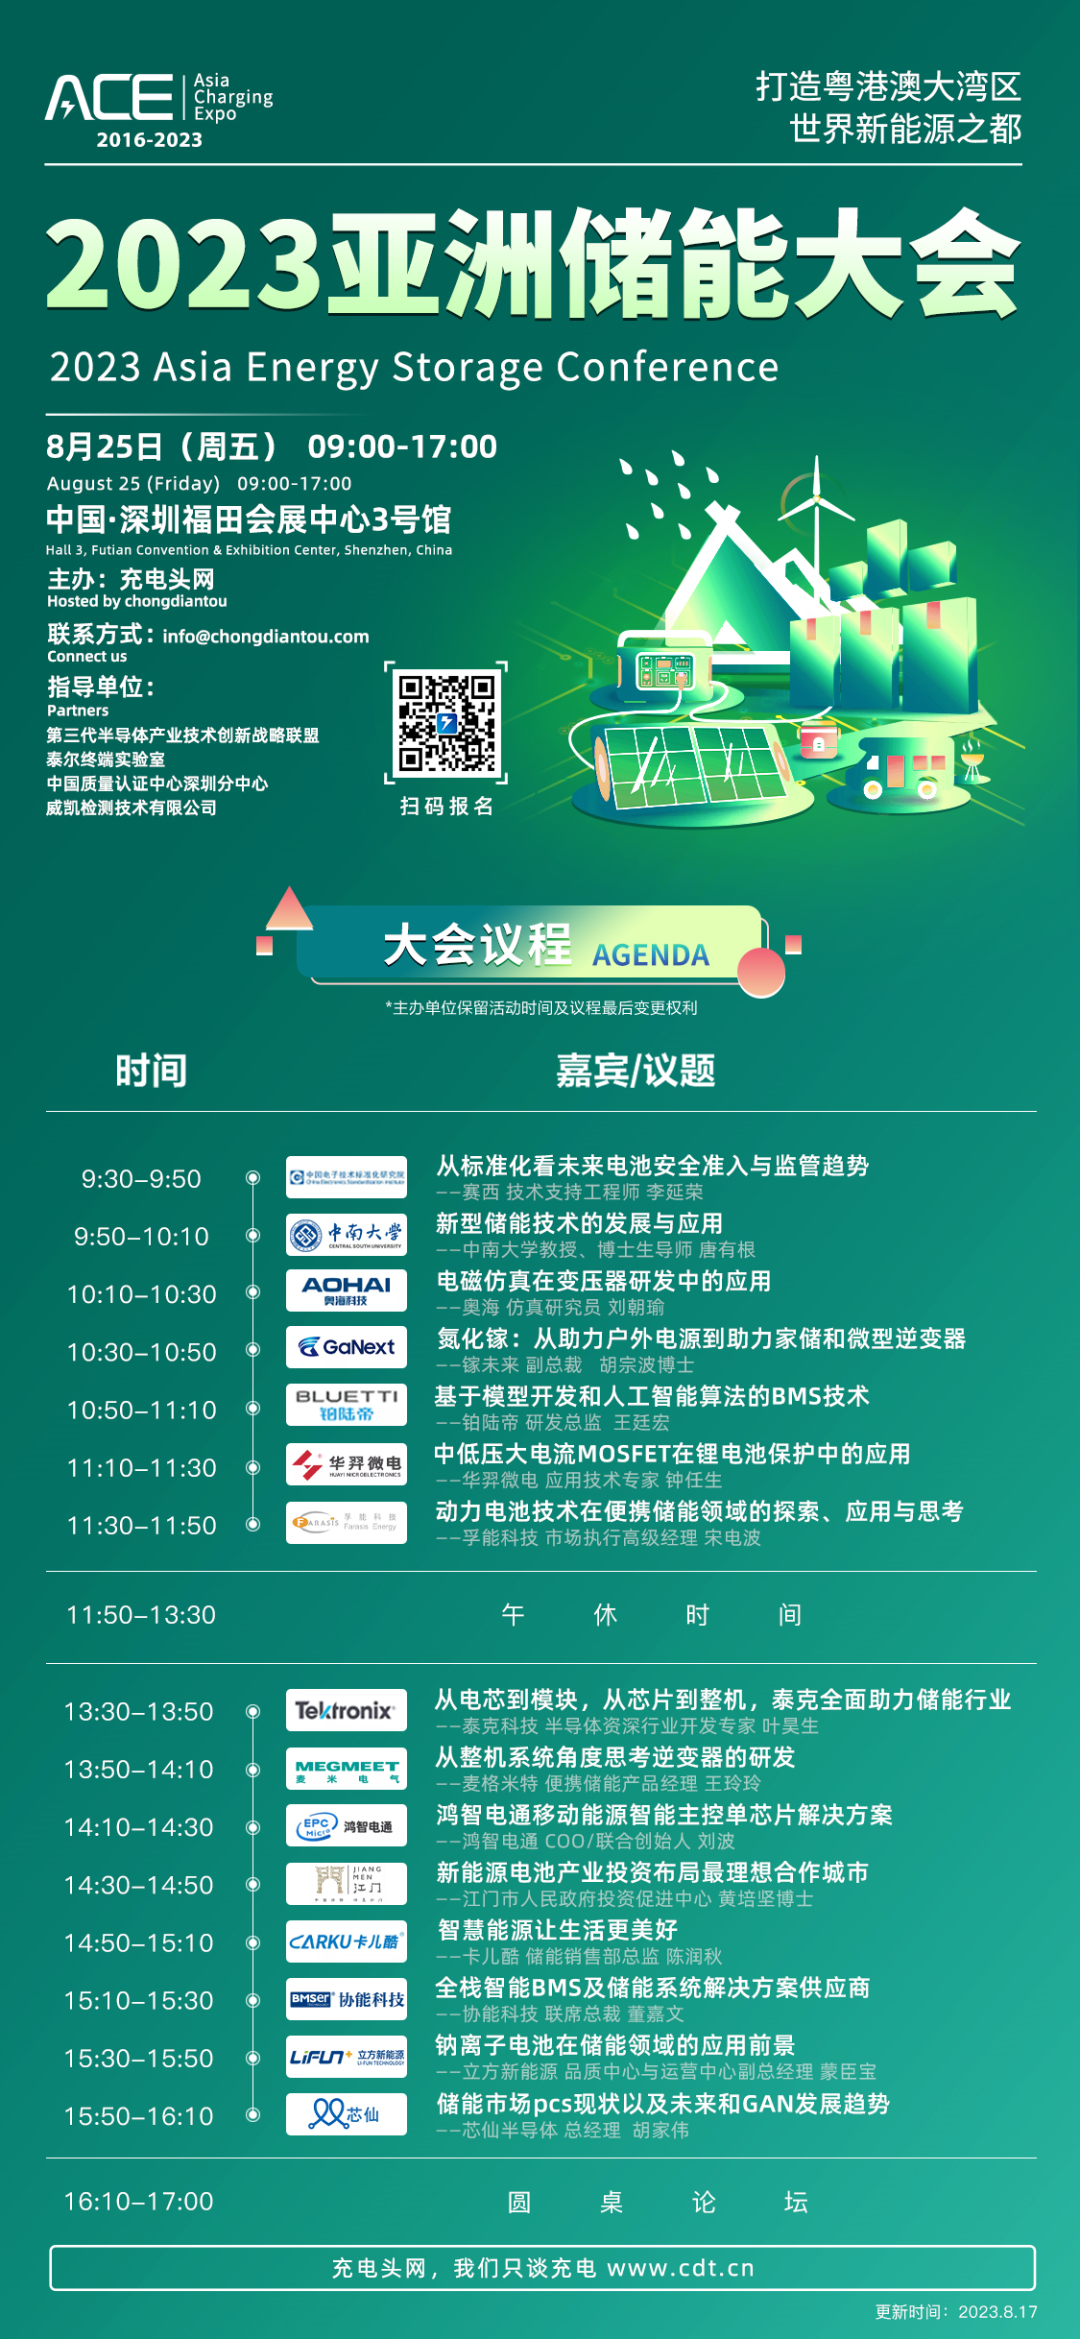 为期3天！这场全球知名行业展会将在深圳举办！-亚洲充电展